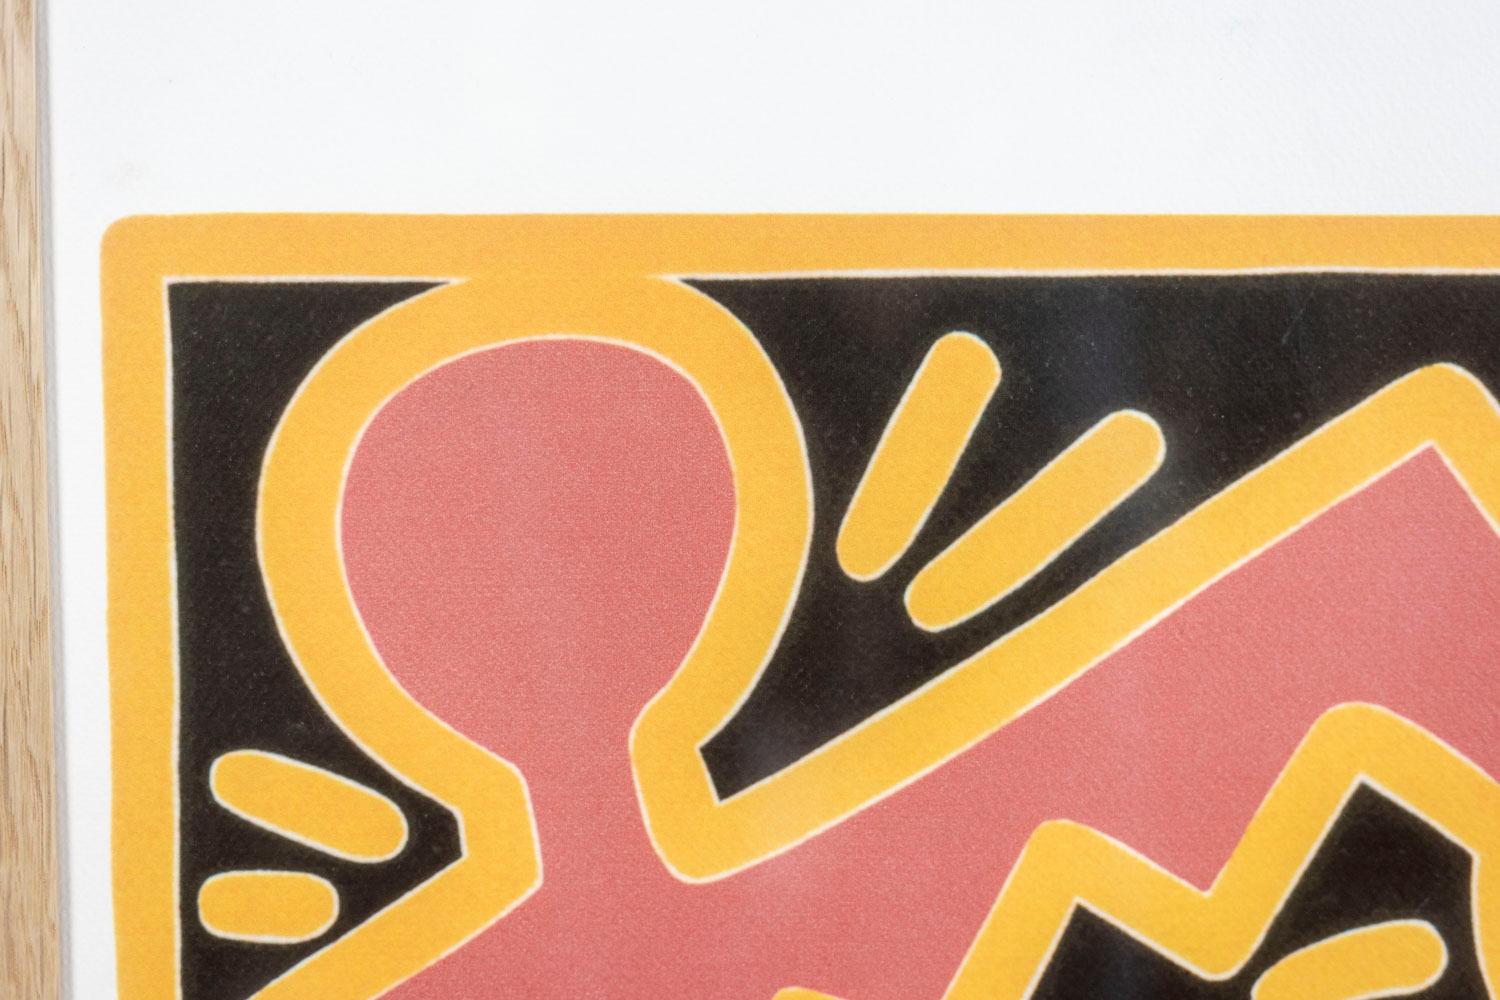 Keith Haring, signé et numéroté.

Sérigraphie abstraite, suggérant des figures schématiques, dans des tons rouge clair, jaune et noir, dans son cadre en chêne blond.

Numéroté 70/150.

Œuvre américaine réalisée dans les années 1990.

Dimensions : L